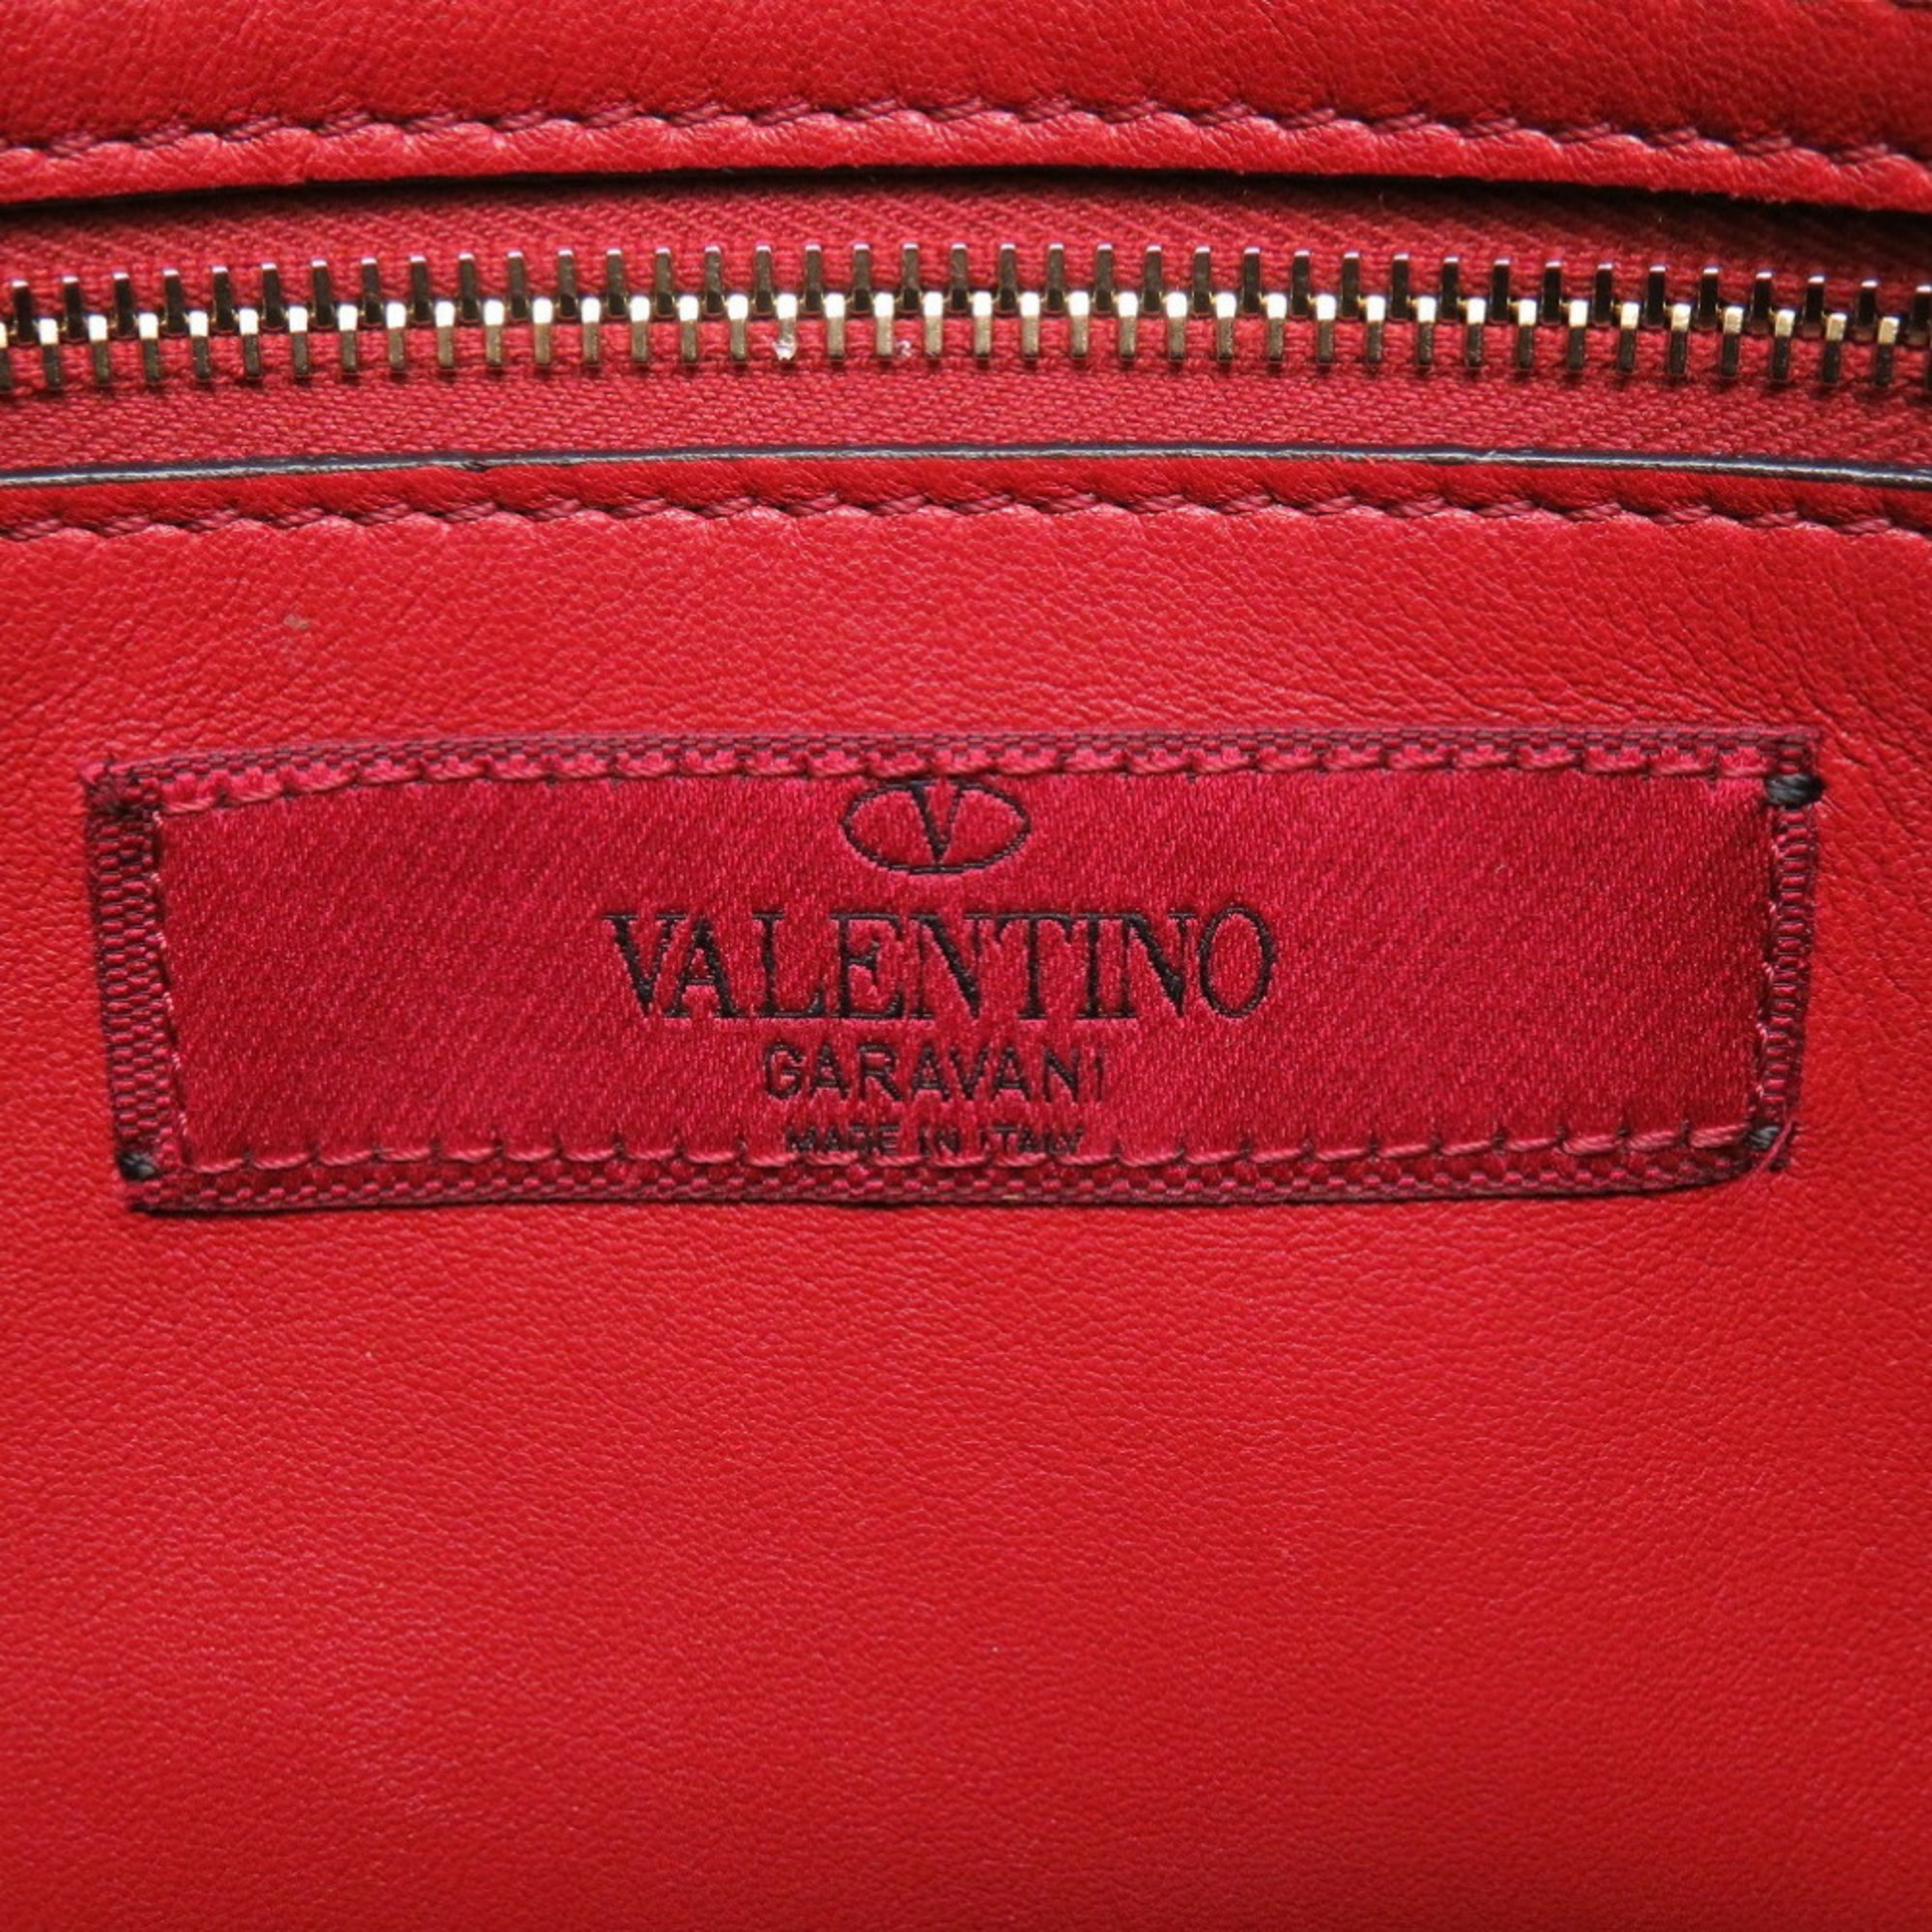 Valentino Garavani Rockstud Leather Navy Shoulder Bag